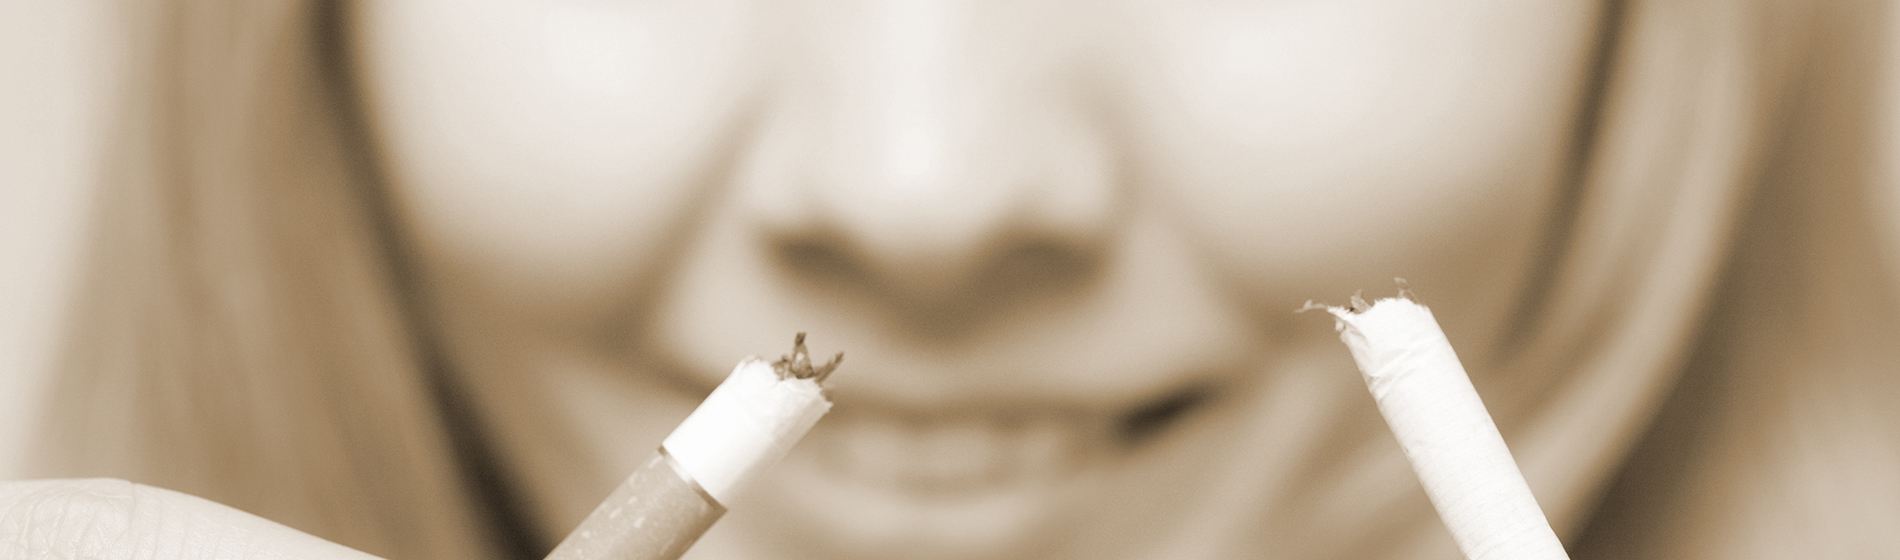 Acupuncture pour arreter de fumer avis